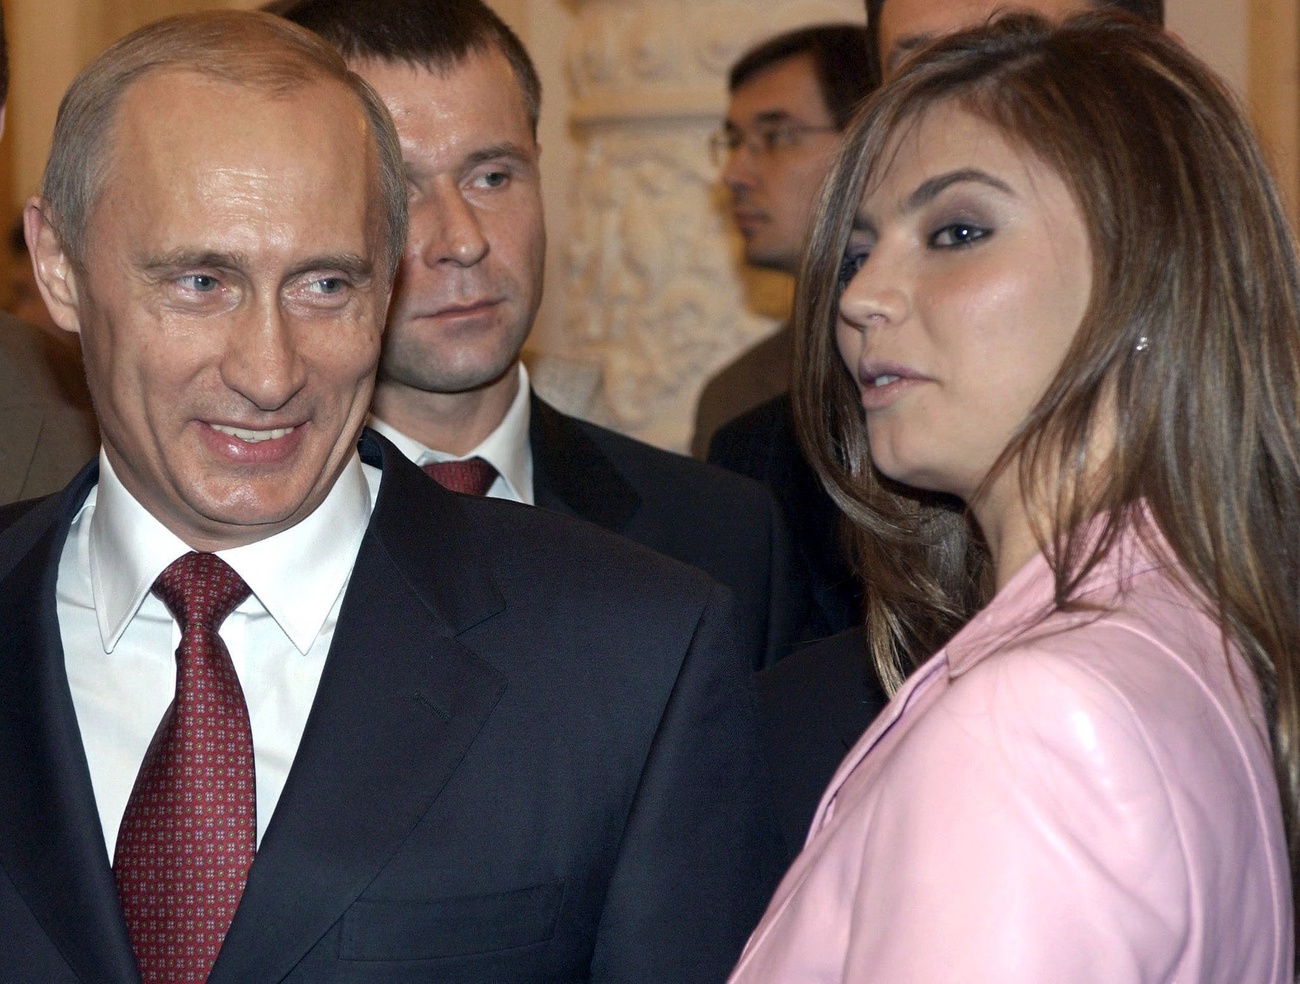 Vladimir Putin and Alina Kabayeva